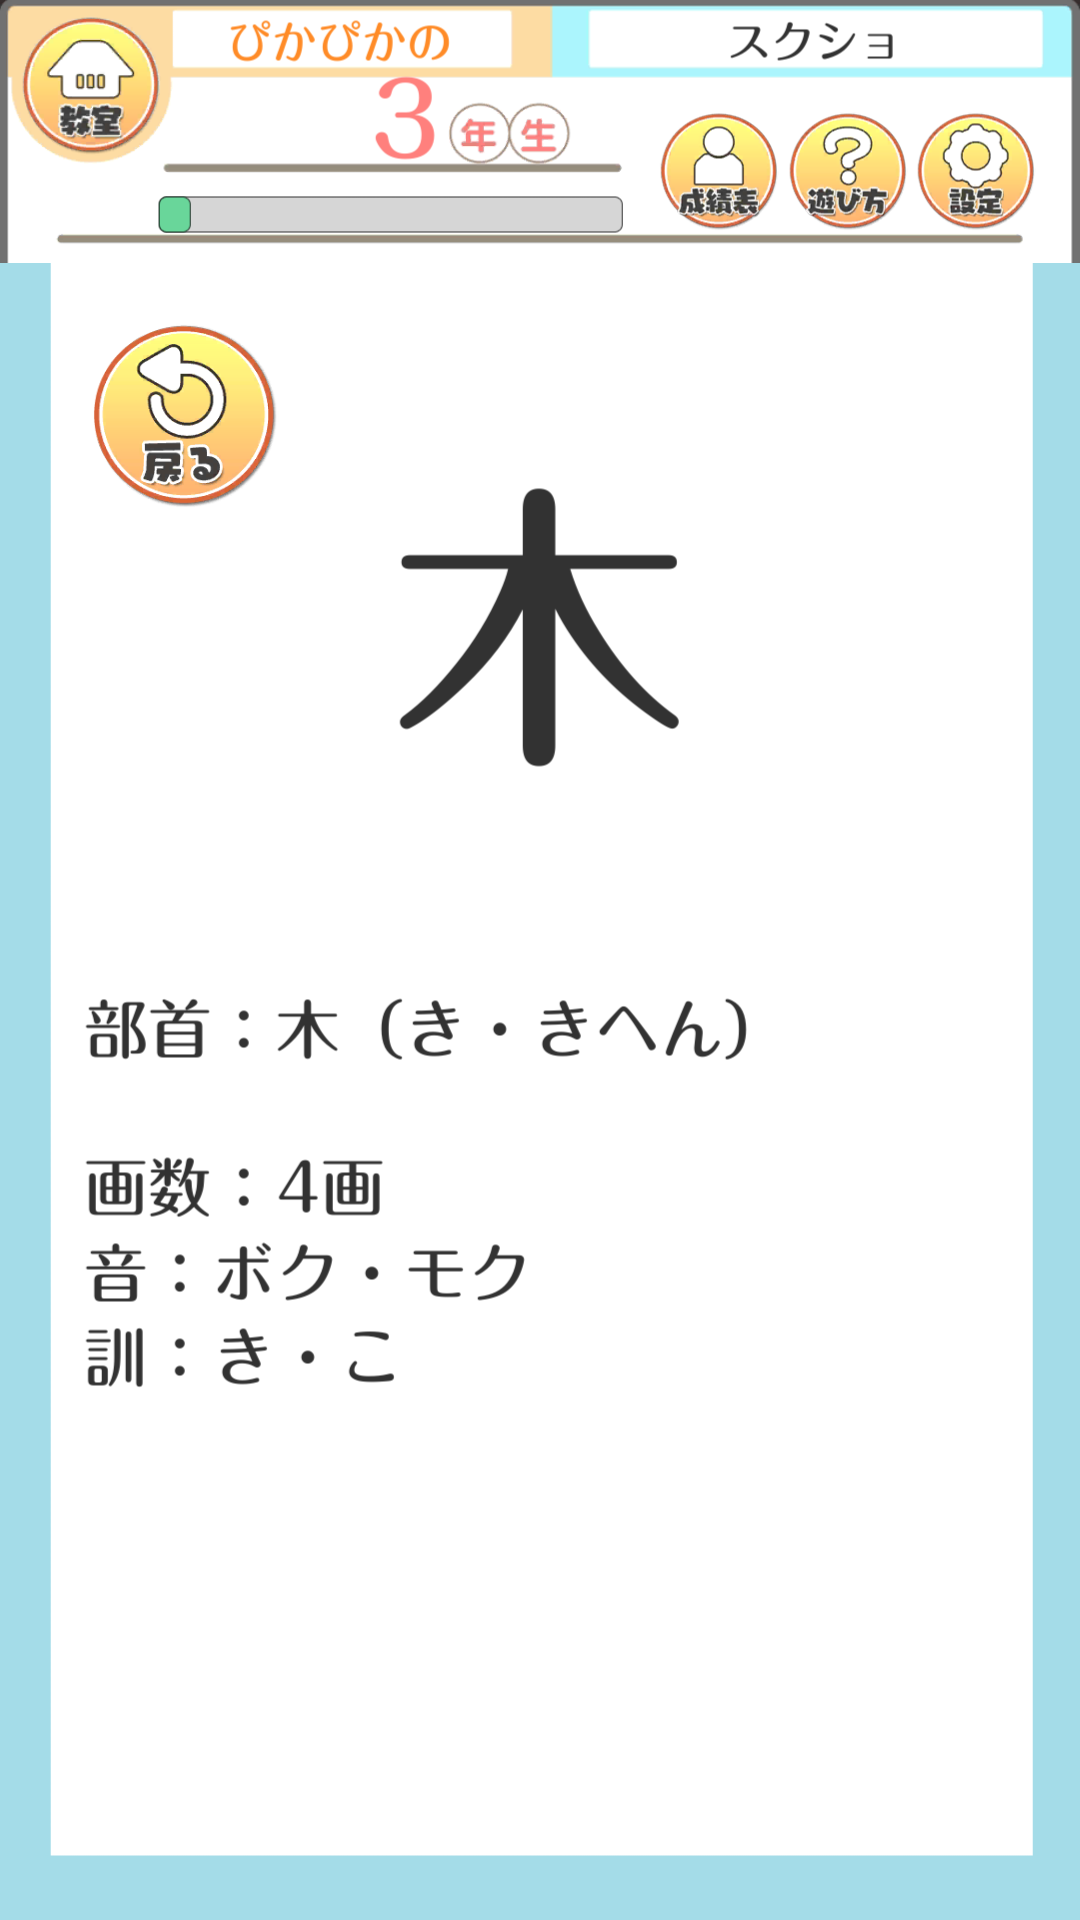 テト字ス 落ちもの漢字パズルゲーム Android Download Taptap